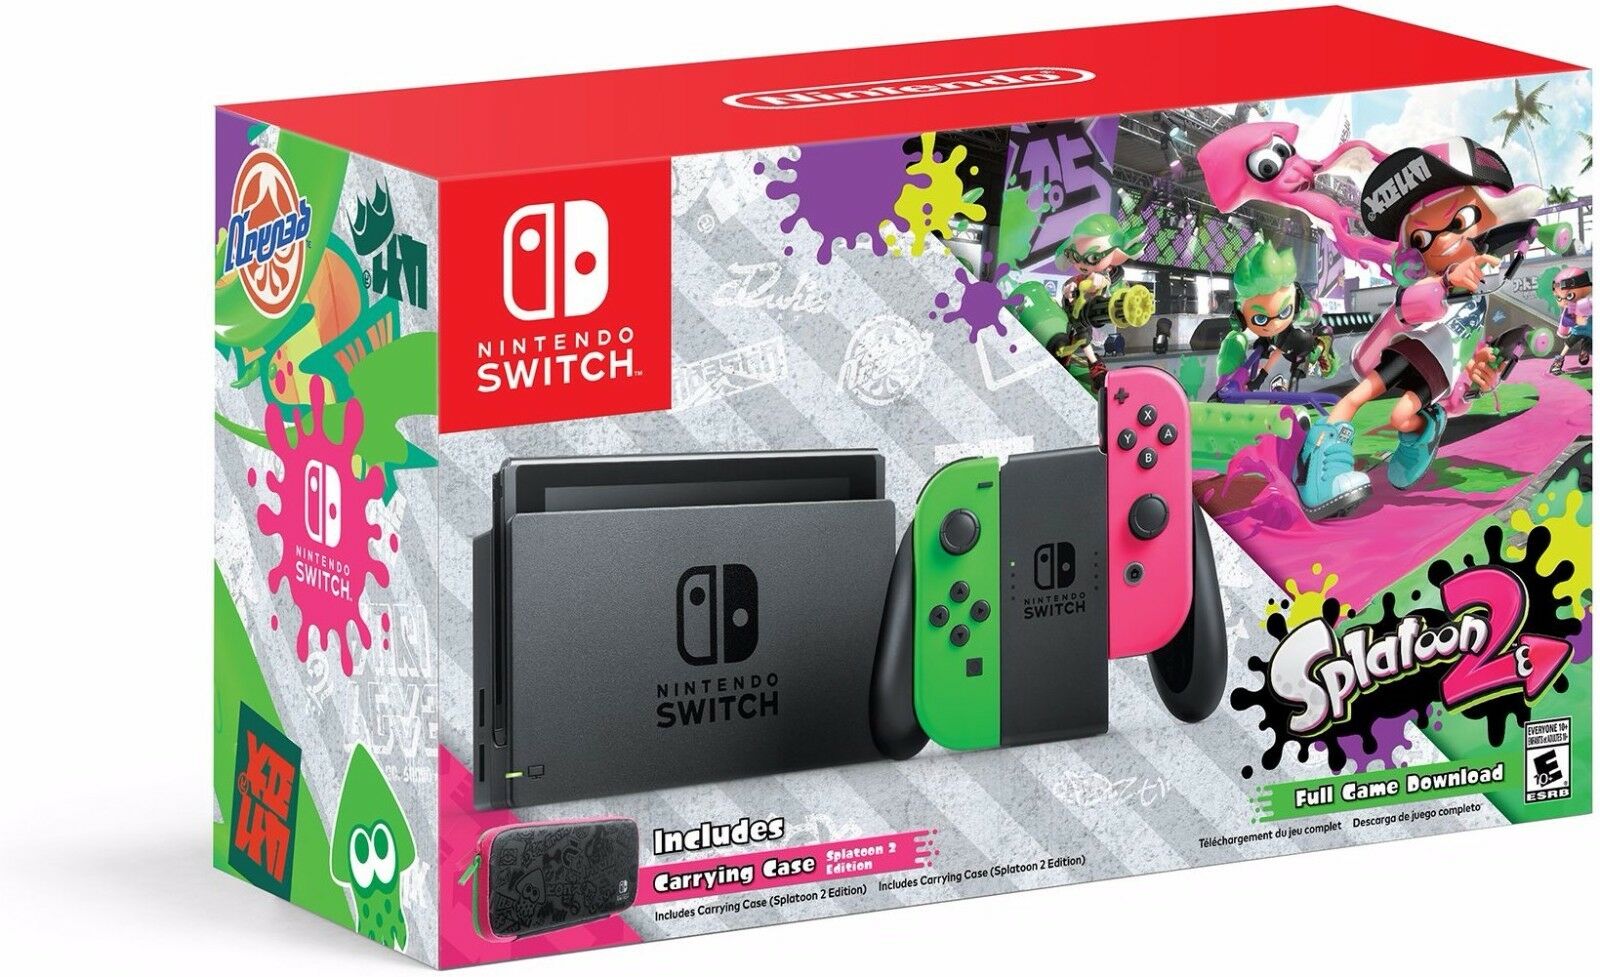 Nintendo スプラトゥーン 2 + ネオングリーン/ネオンピンク Joy-Con を備えた Switch ハードウェア (Switch)